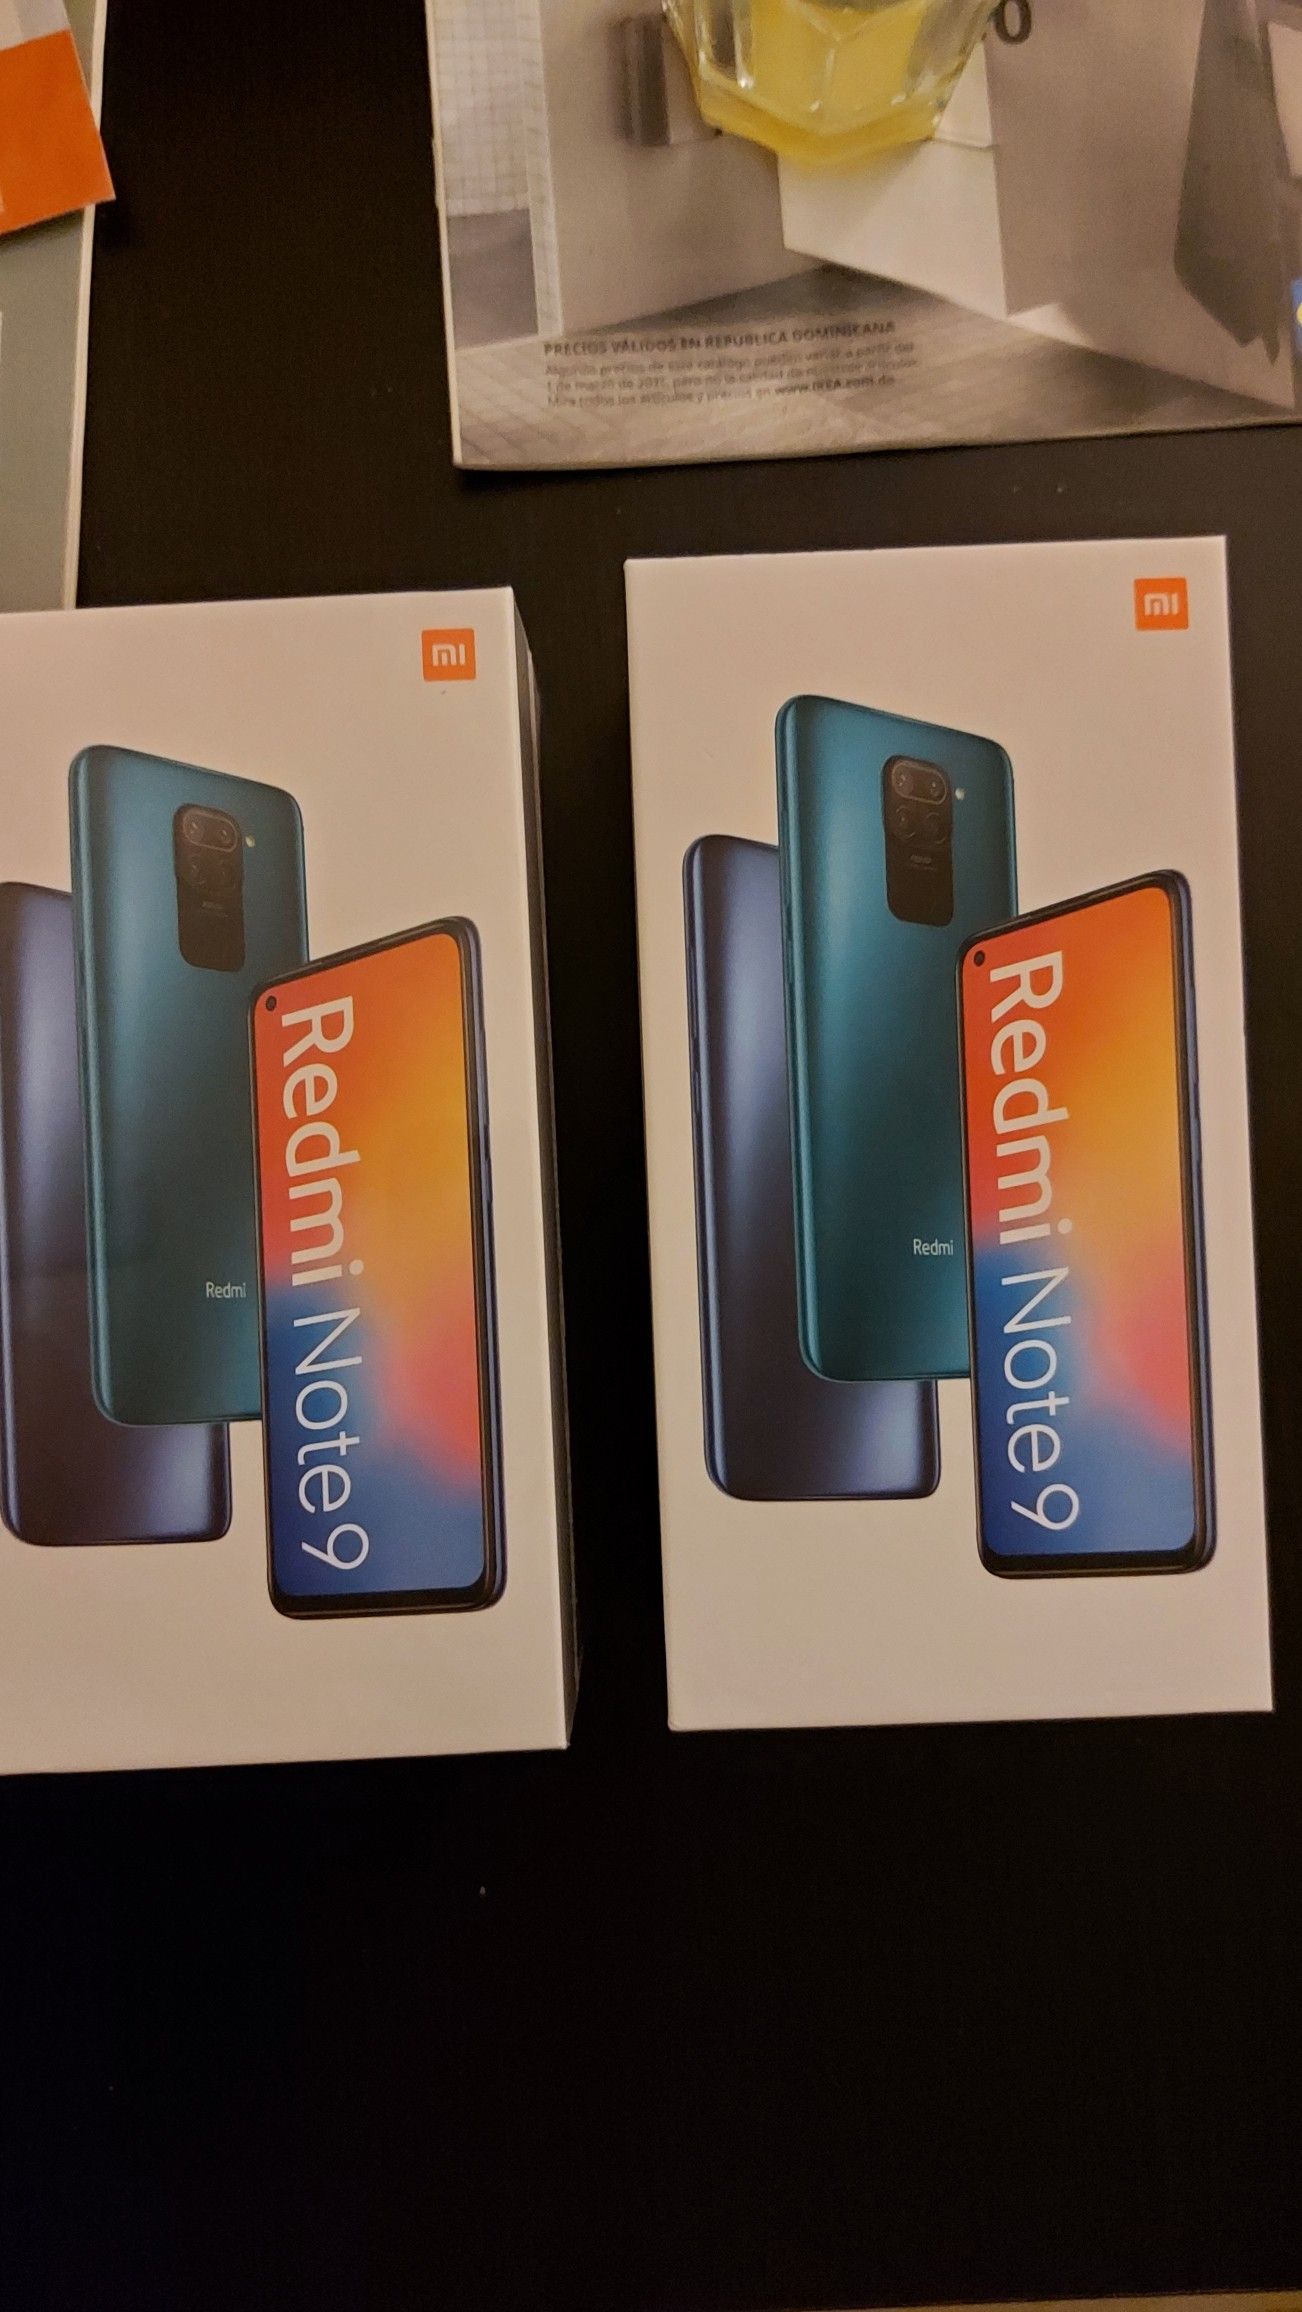 celulares y tabletas - Cecular Redmi Note 9 
Nuevo
Oferta 